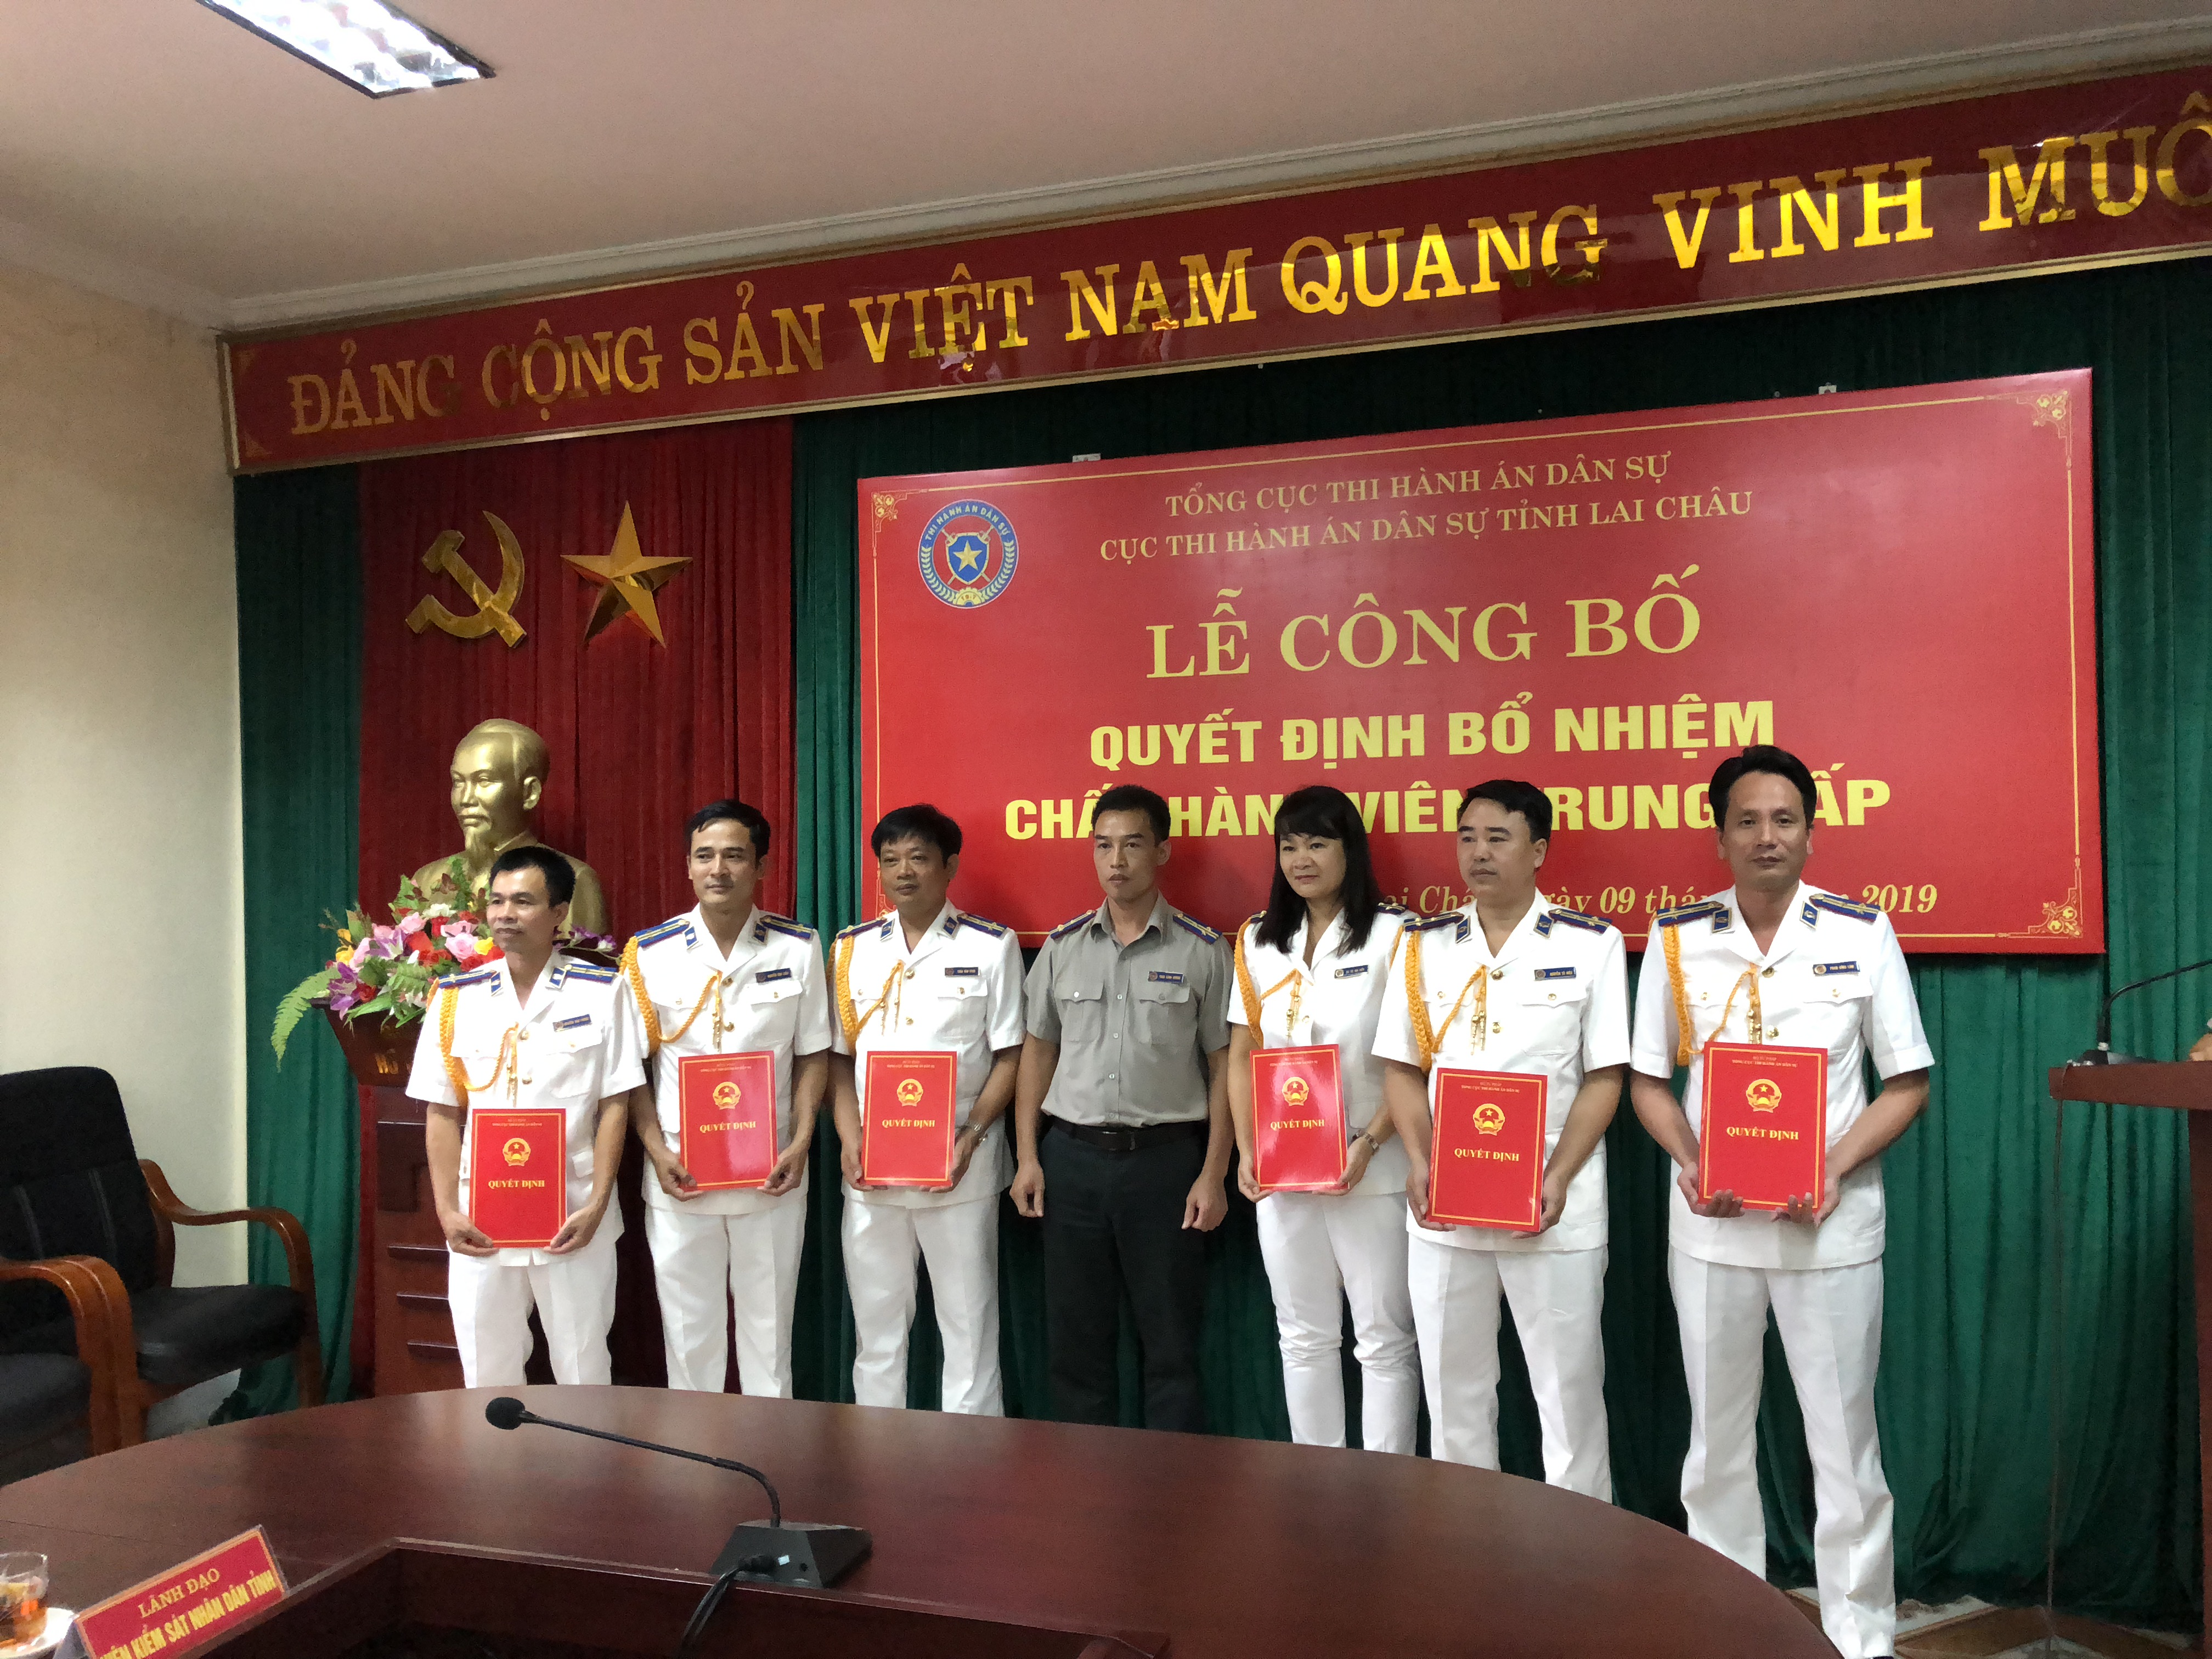 Cục Thi hành án dân sự tỉnh Lai Châu tổ chức Lễ công bố Quyết định bổ nhiệm Chấp hành viên trung cấp